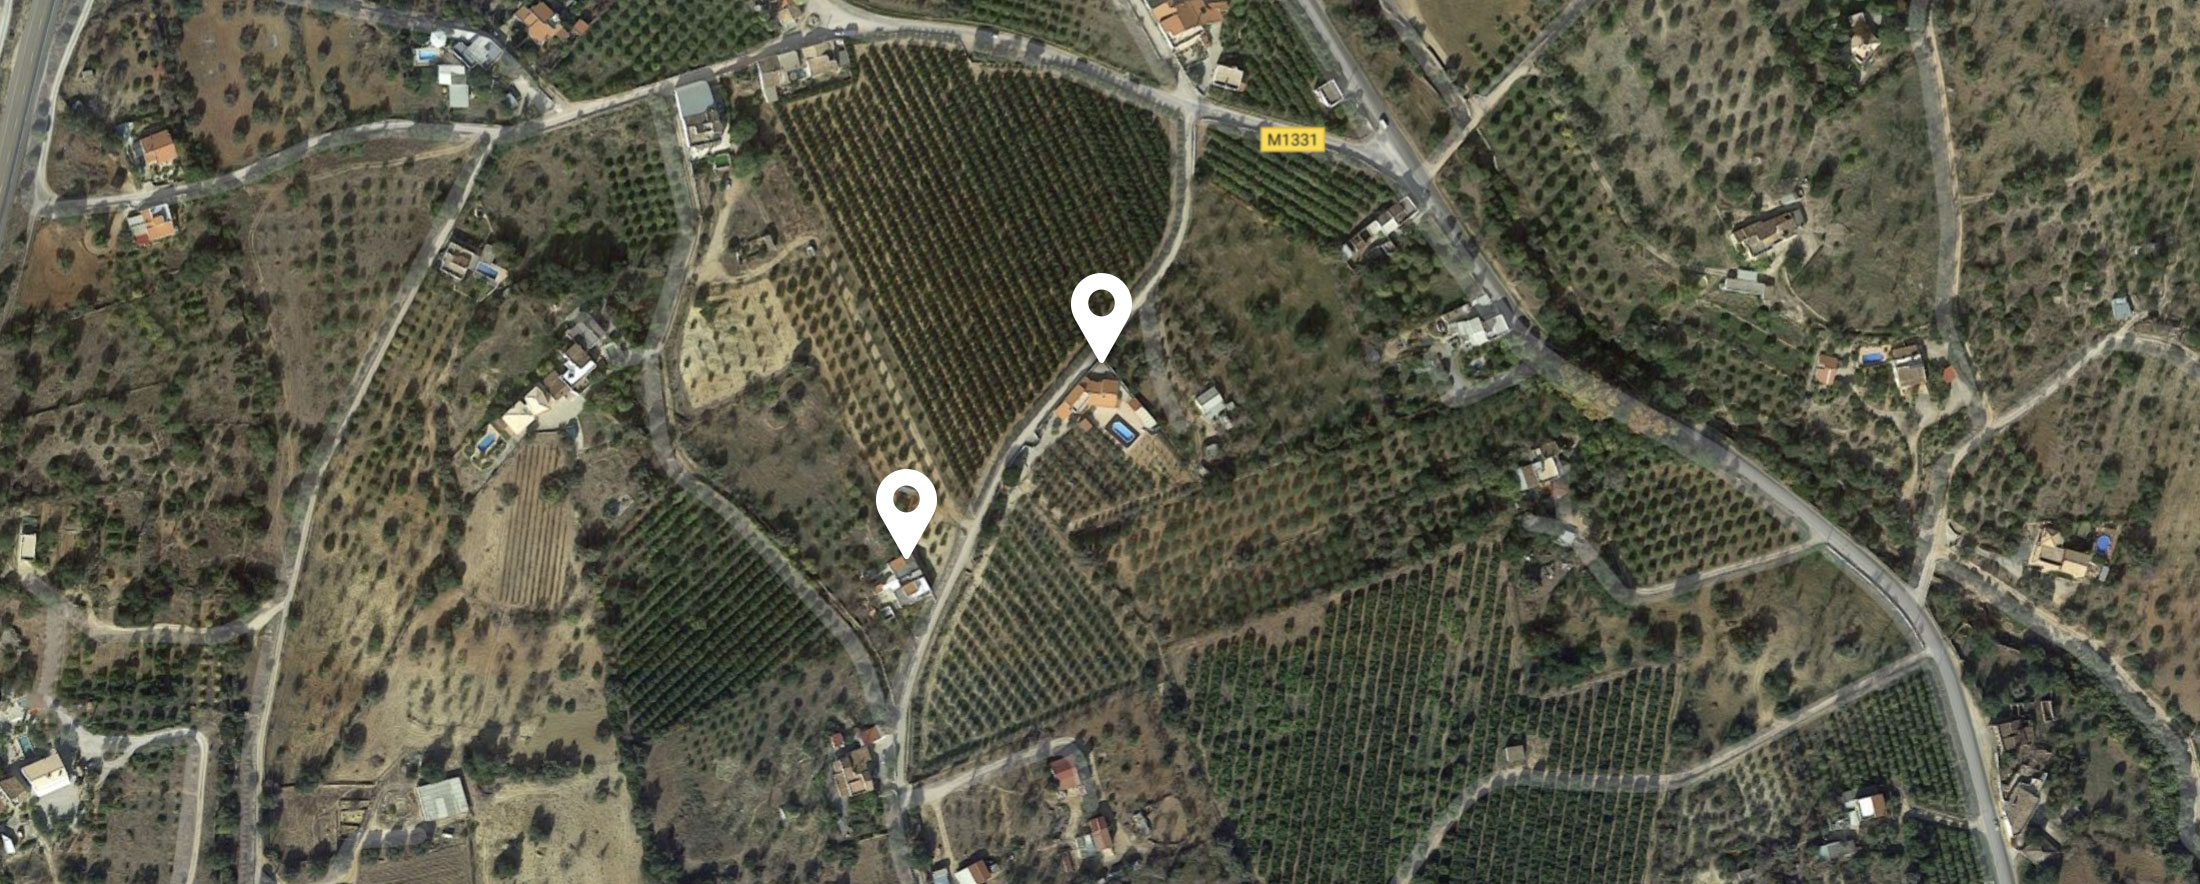 Villa Oliva location map